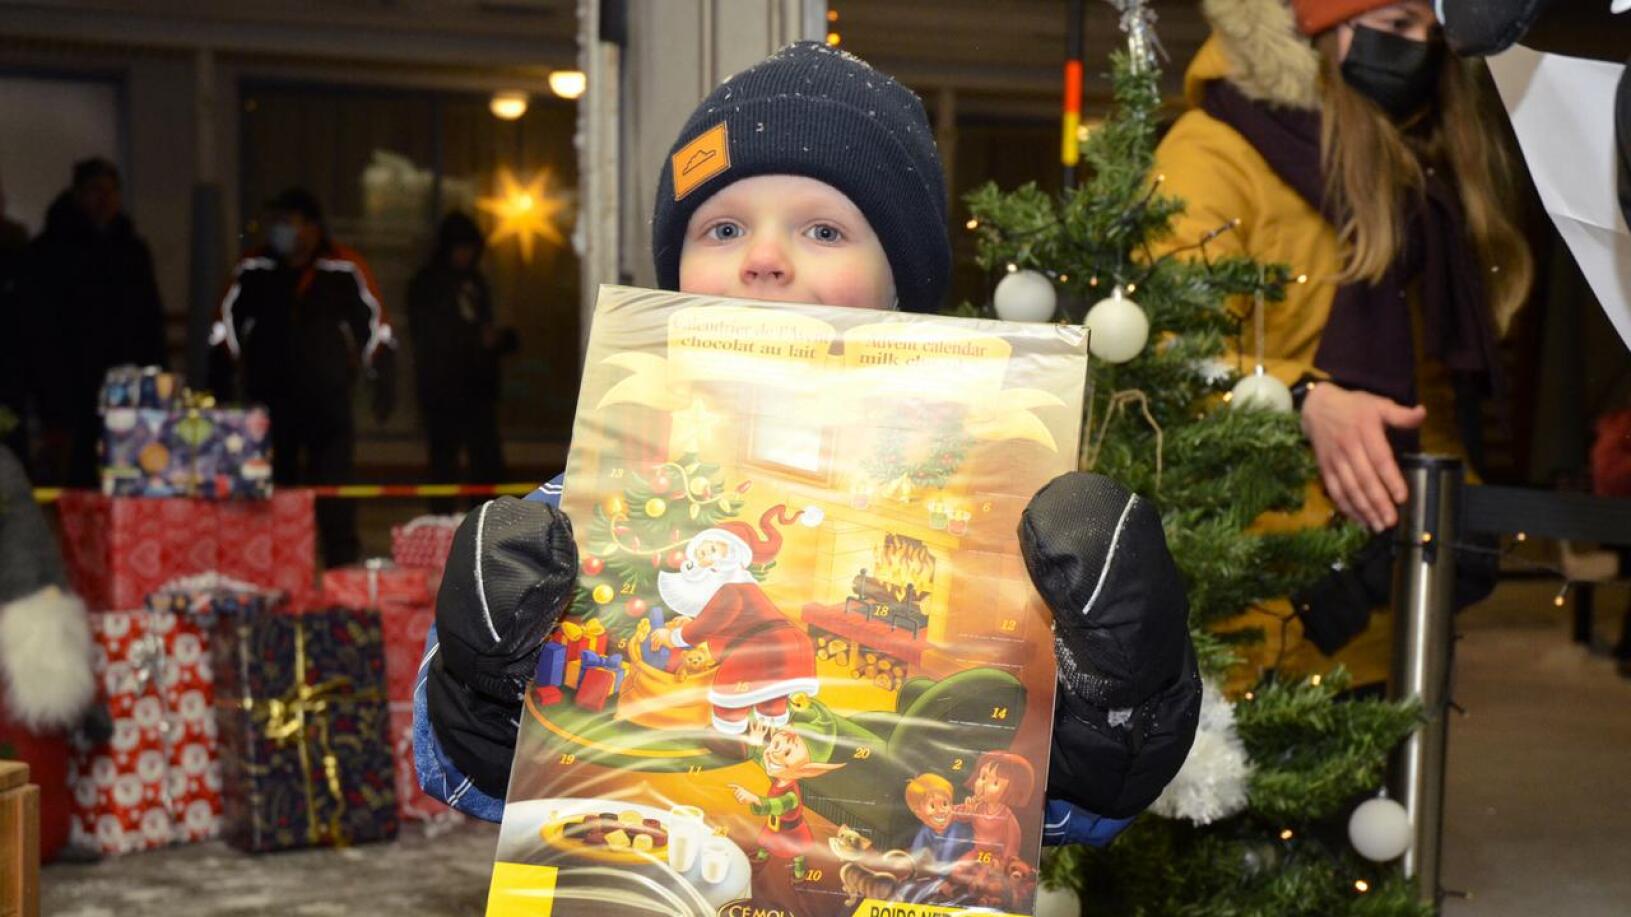 Nivalalainen Eeli Jyrkkä sai pukilta komean joulukalenterin.  Eeli kertoi, että kalenterin saaminen tuntuu hyvältä. Hän aikoo avata luukut kärsivällisesti päivä kerrallaan.